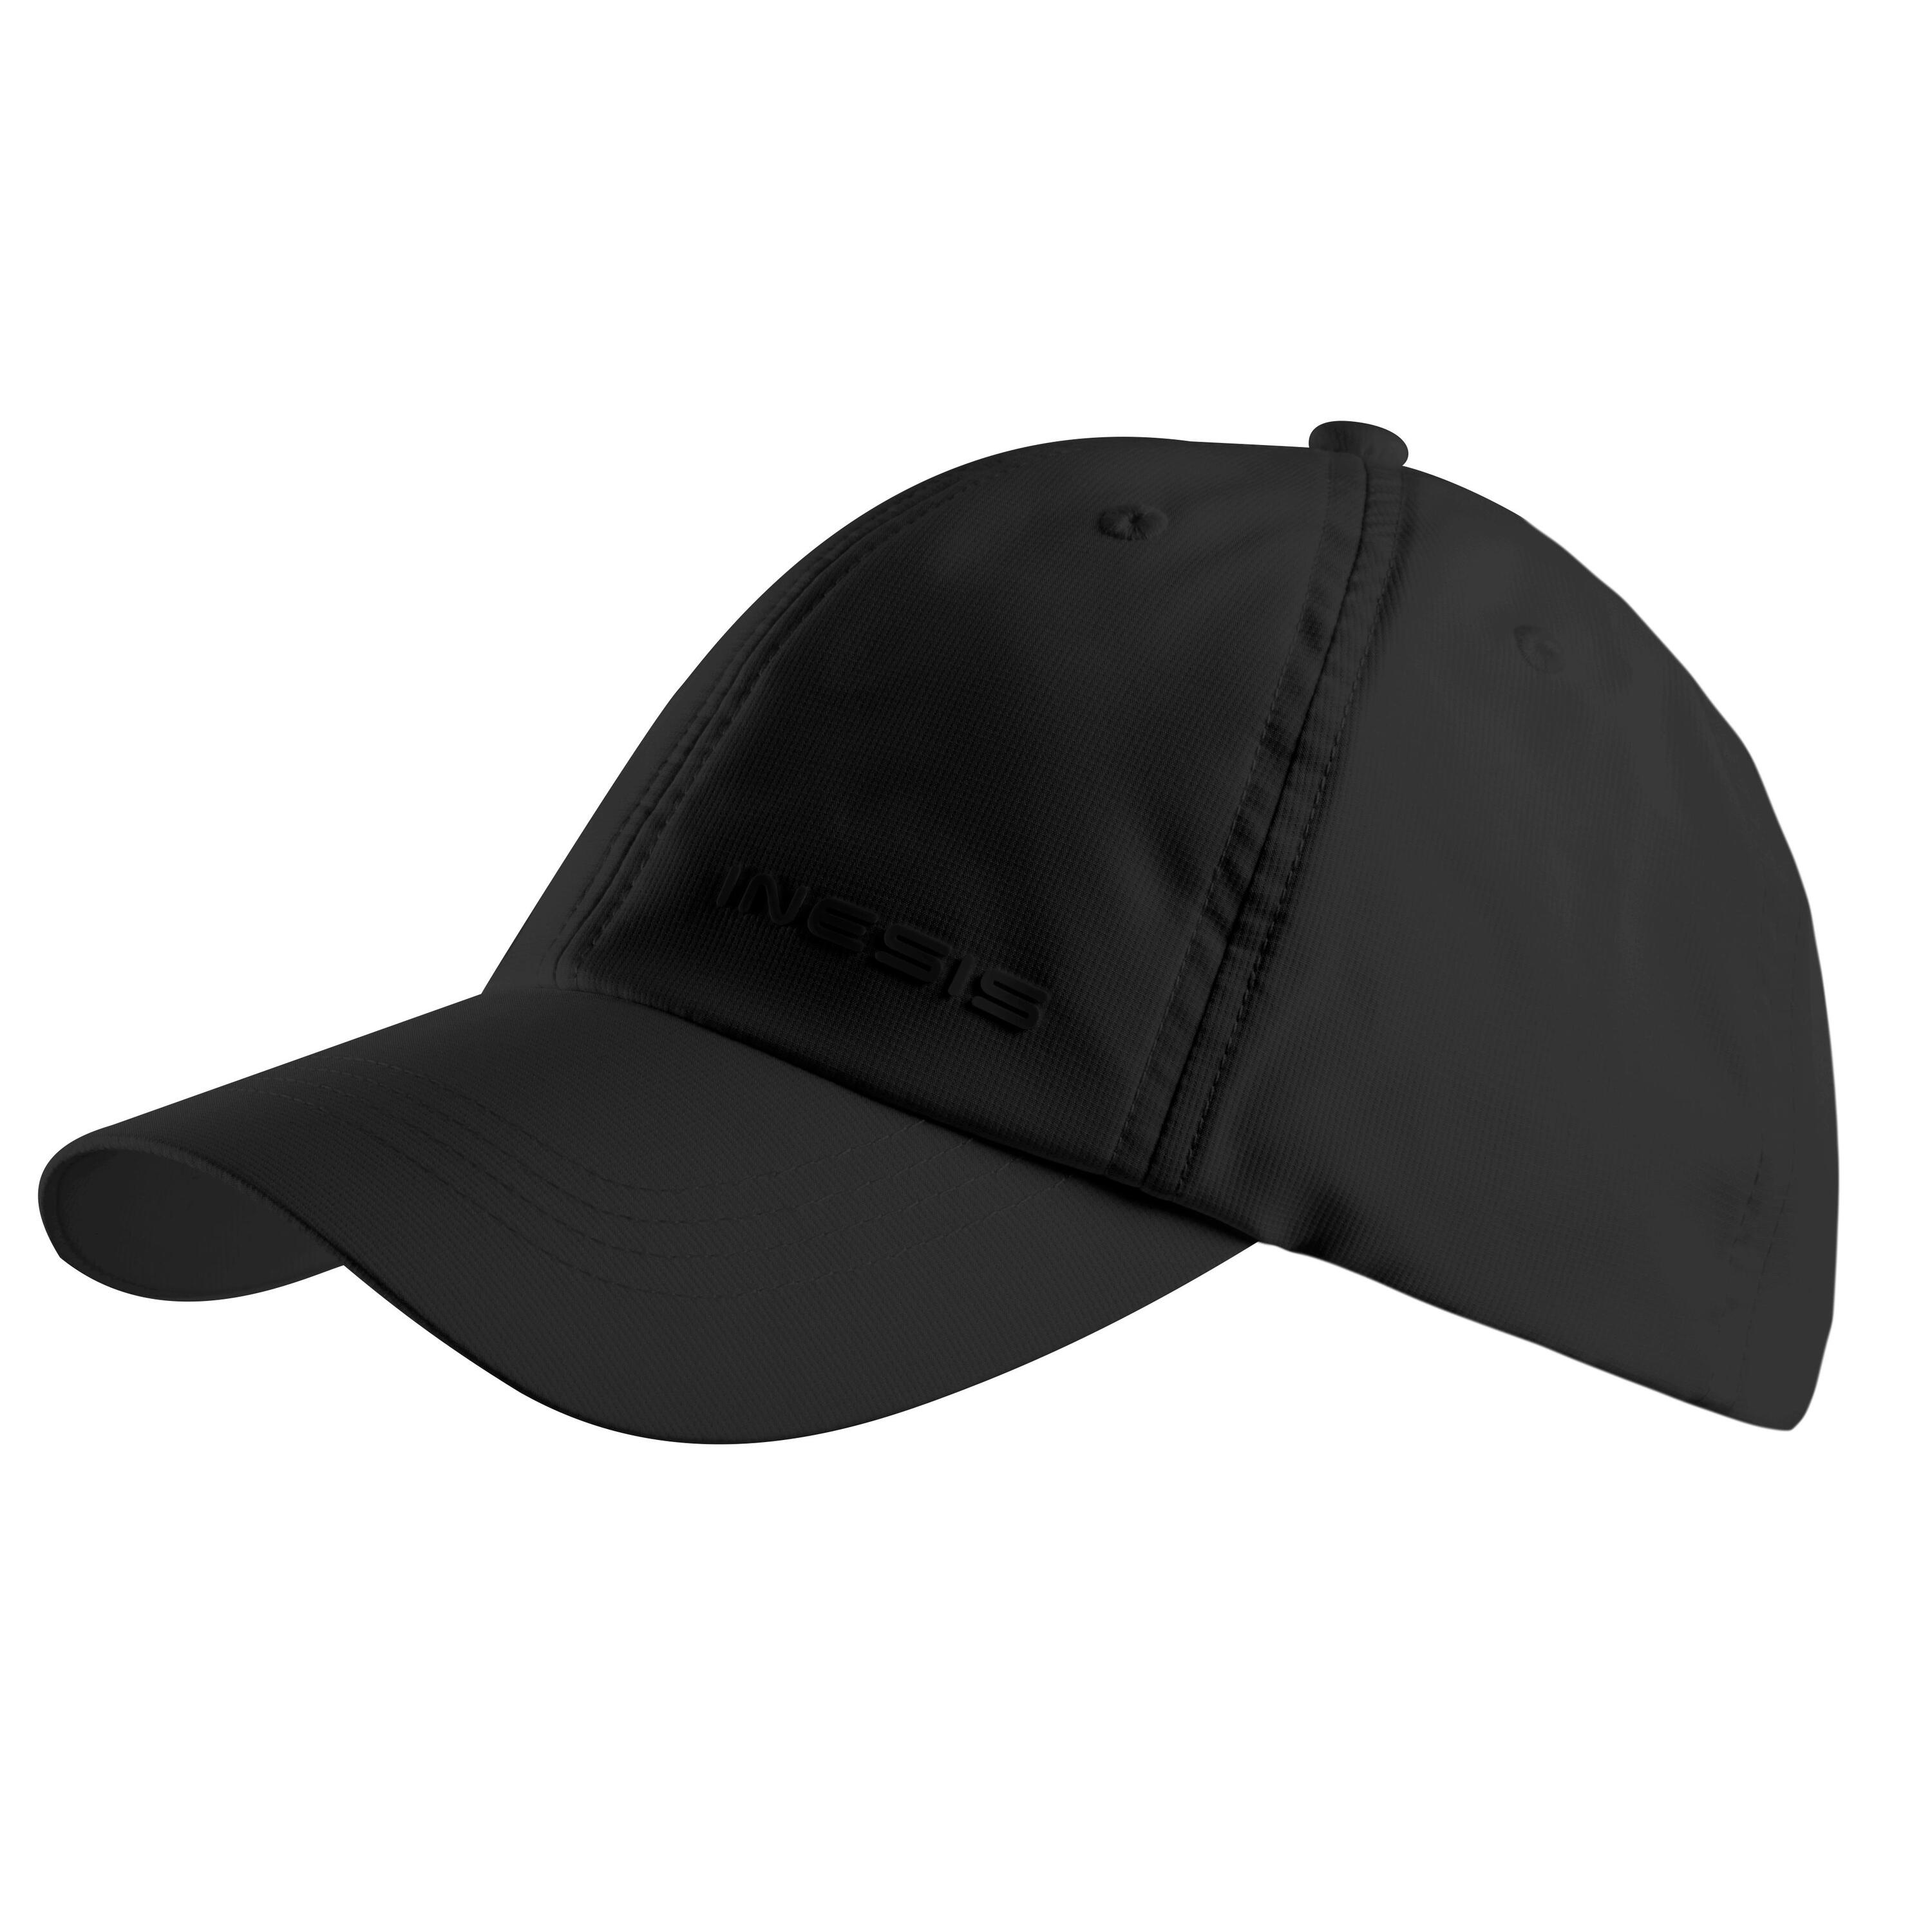 Adults' Golf Cap - WW 500 Black 2/4